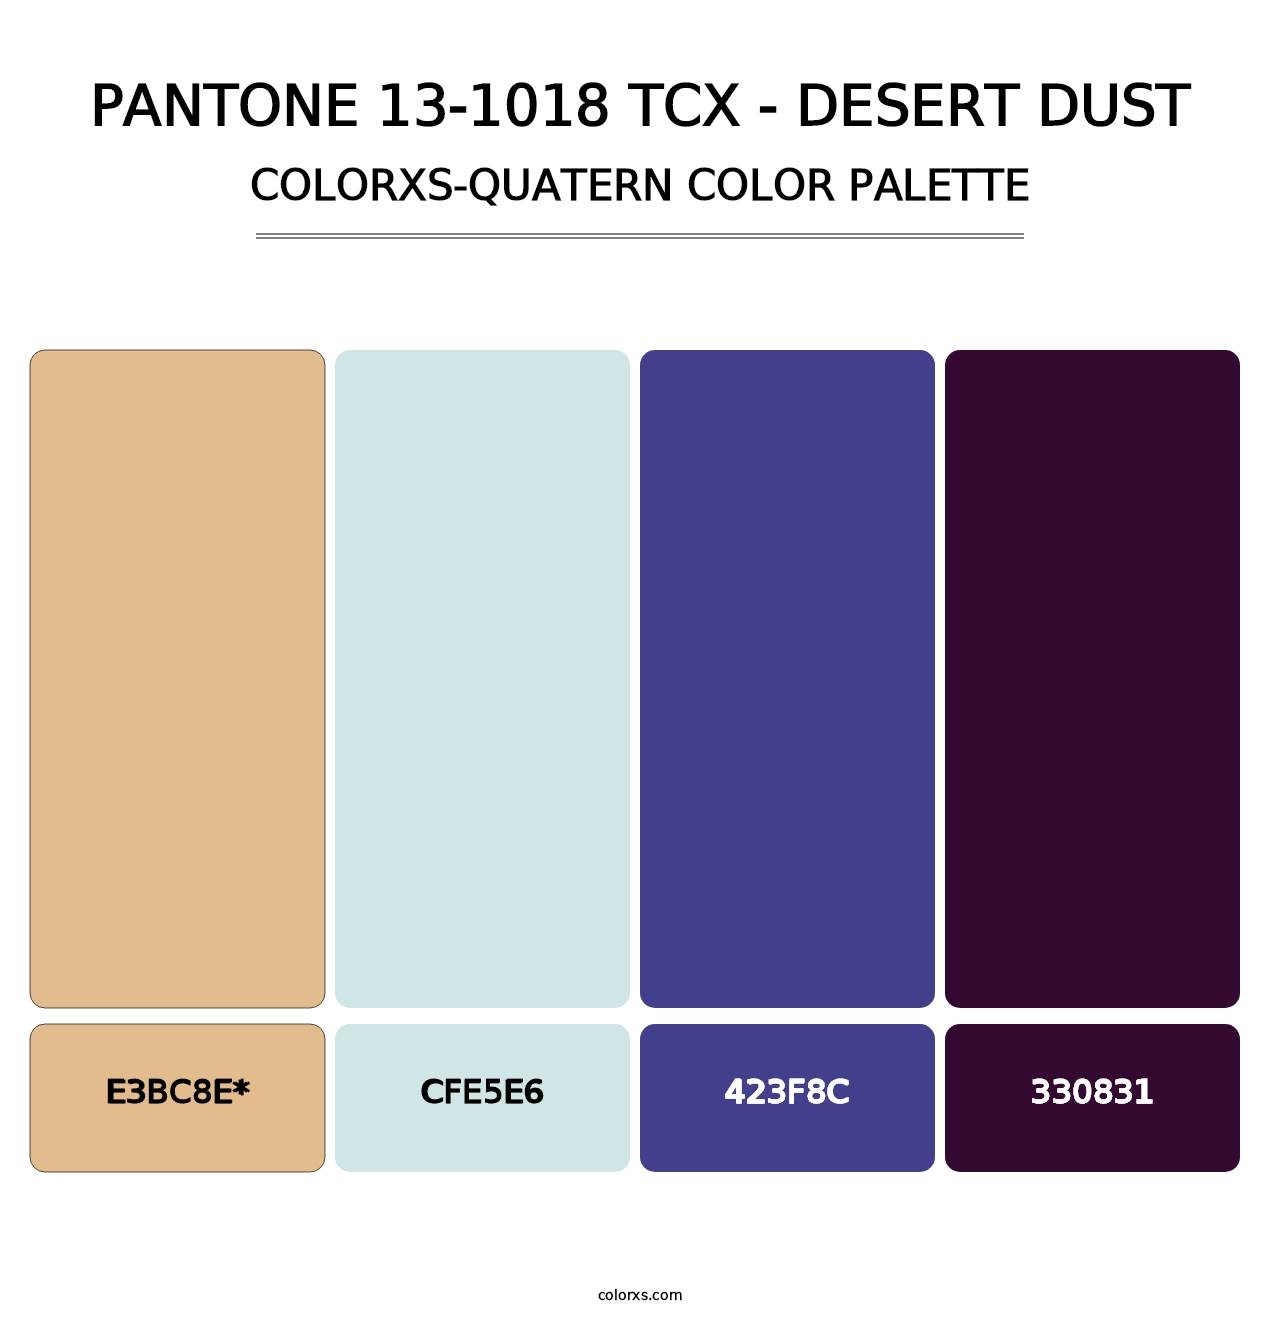 PANTONE 13-1018 TCX - Desert Dust - Colorxs Quatern Palette